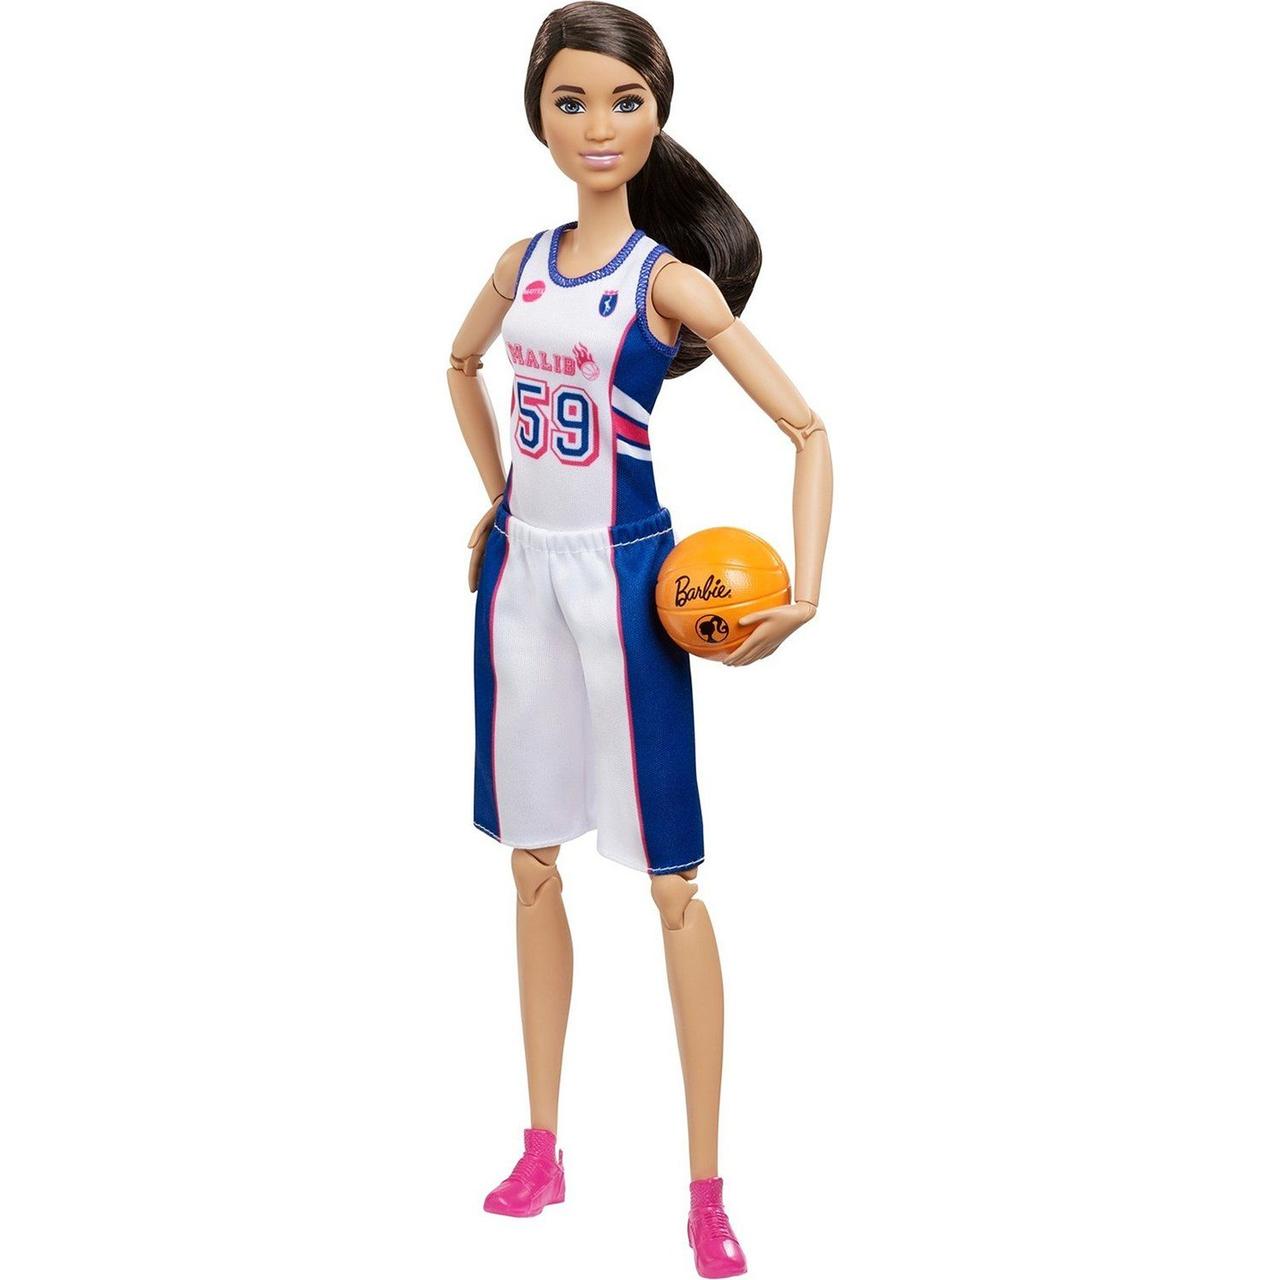 Кукла Барби MADE TO MOVE Баскетболистка DVF68/FXP06, фото 1